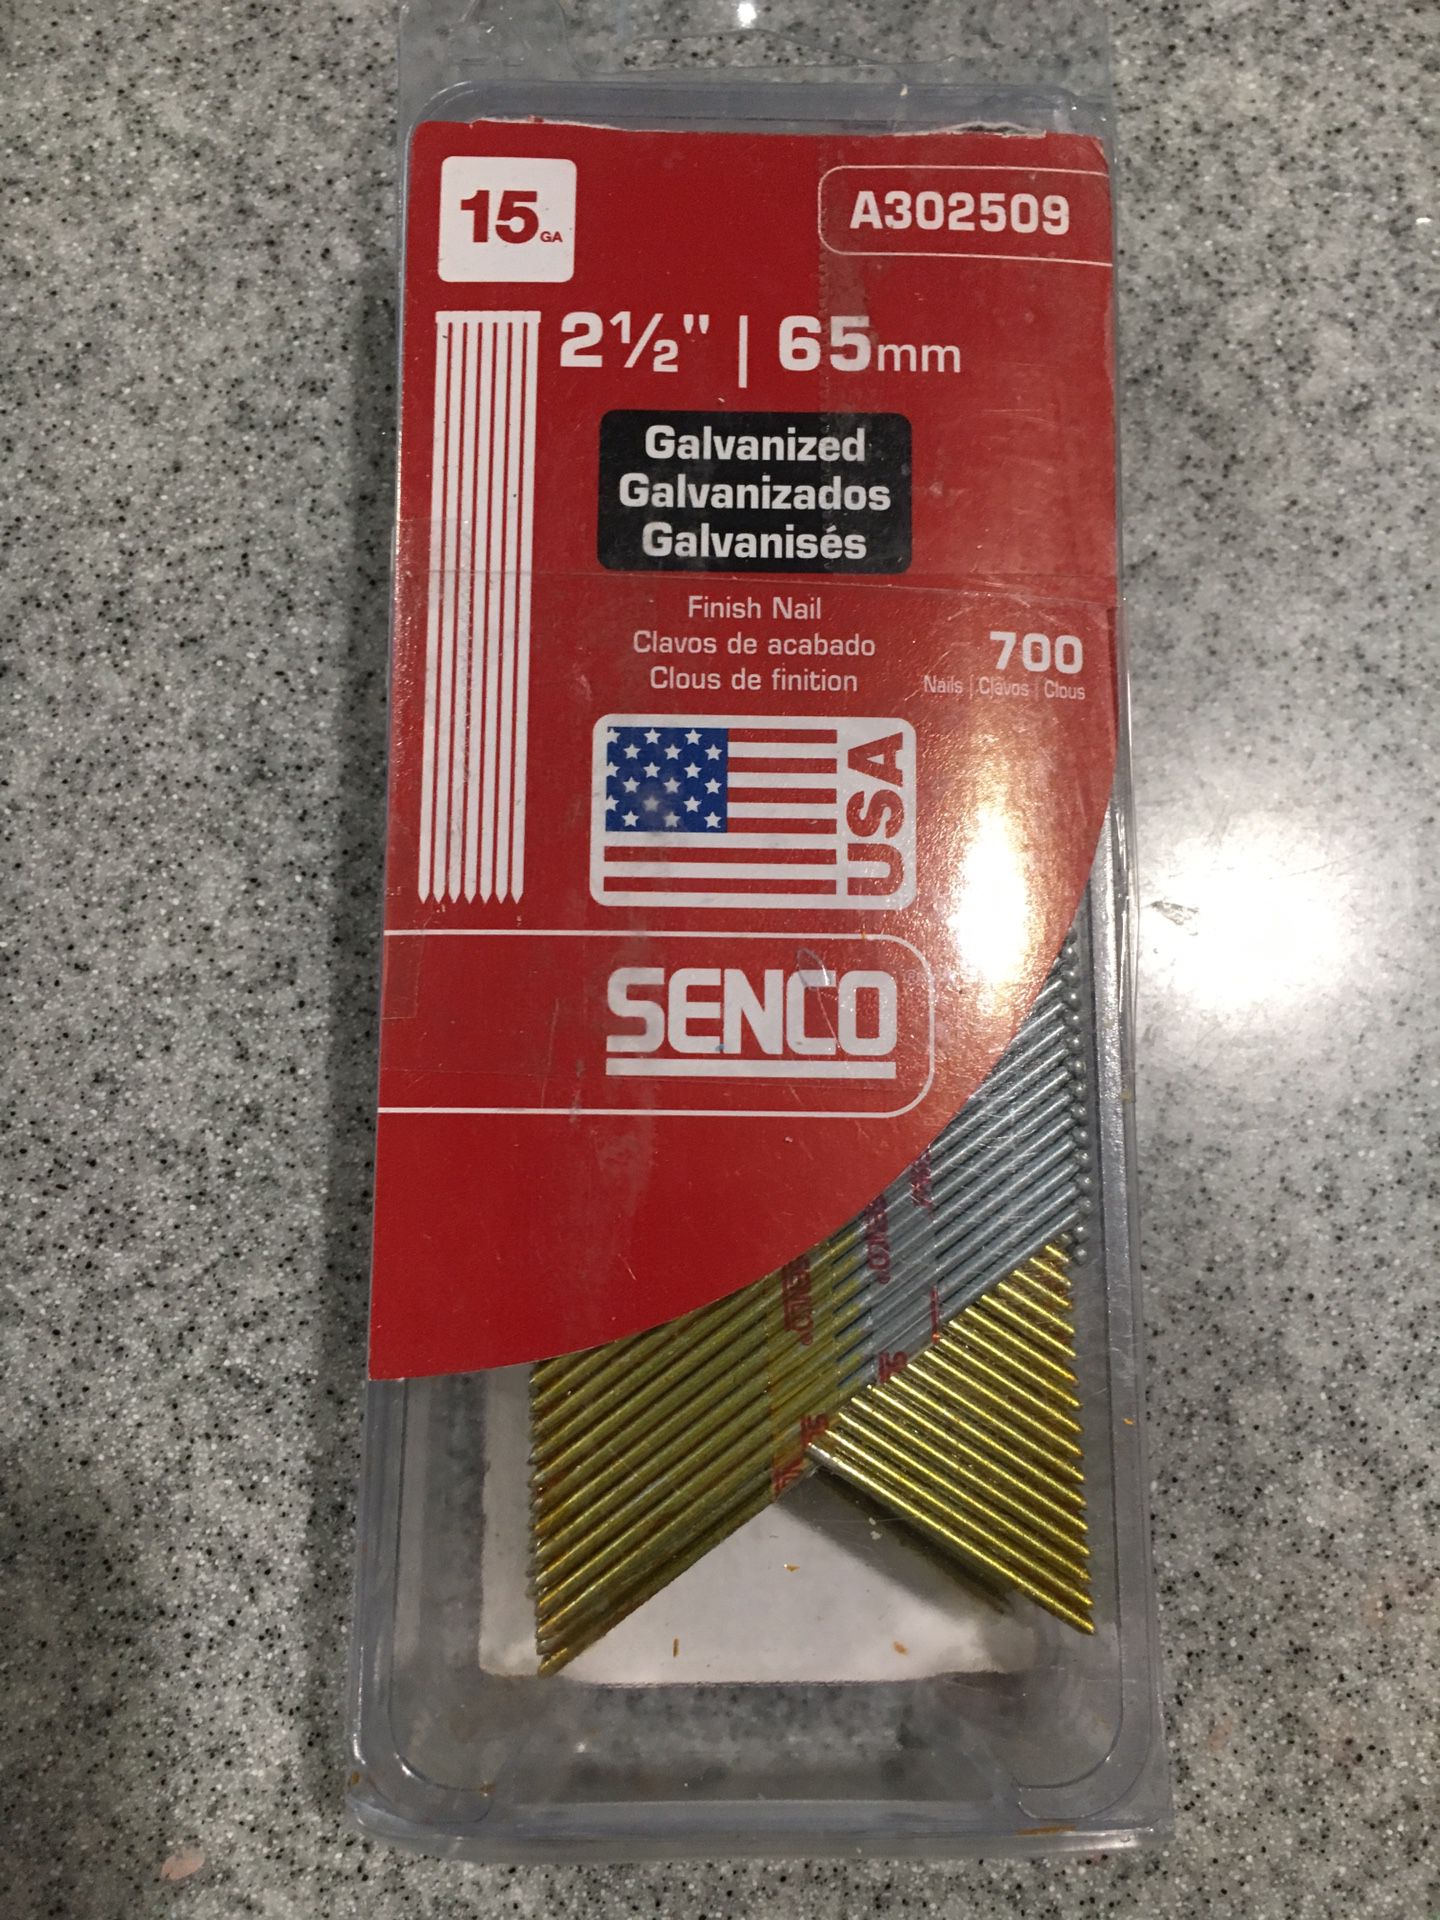 Senco 2.5”, 65mm, 15ga Galvanized nails for nail gun